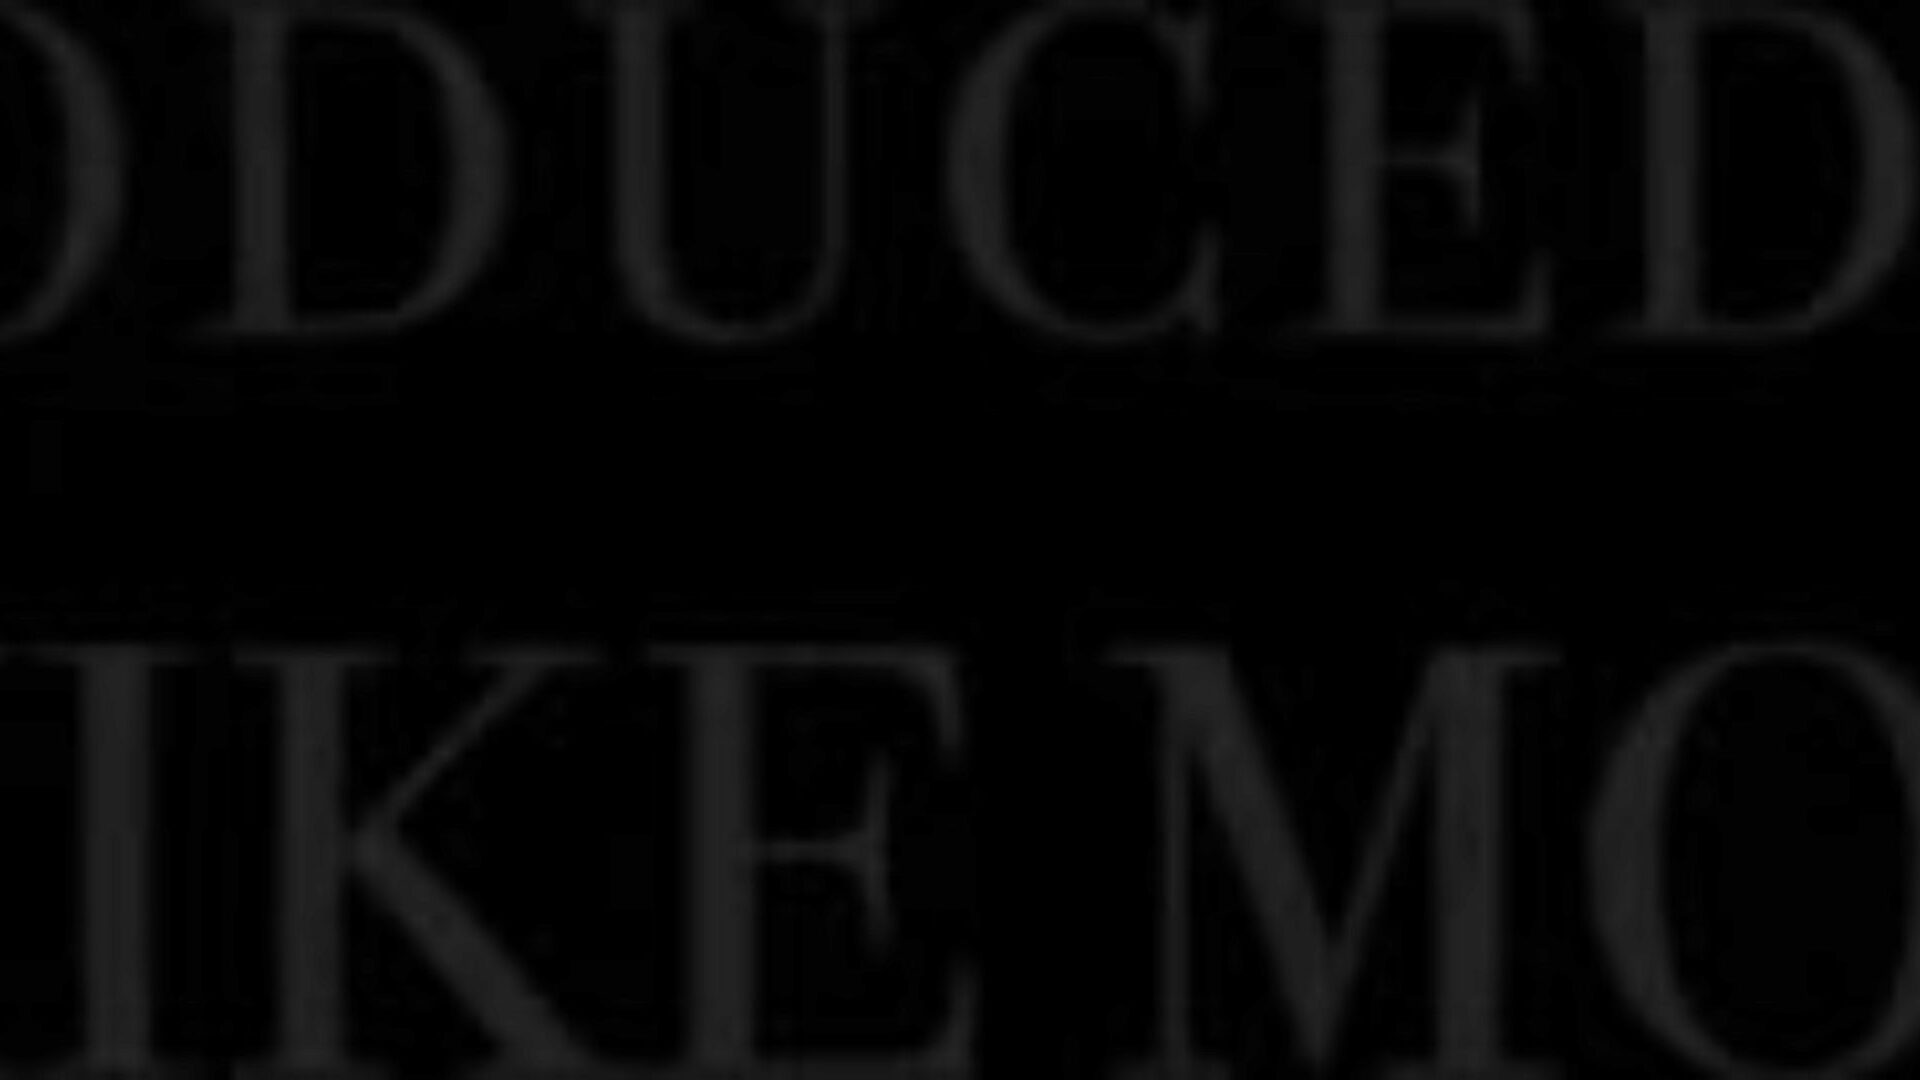 تشارك blackedraw alexis بي بي سي ضخمة مع bestie watch blackedraw alexis تشارك بي بي سي ضخمة مع بيستي جيل فيديو على xhamster - المجموعة النهائية لقائمة بي بي سي المجانية واحتفظت بحلقات أنبوب إباحي عالي الدقة